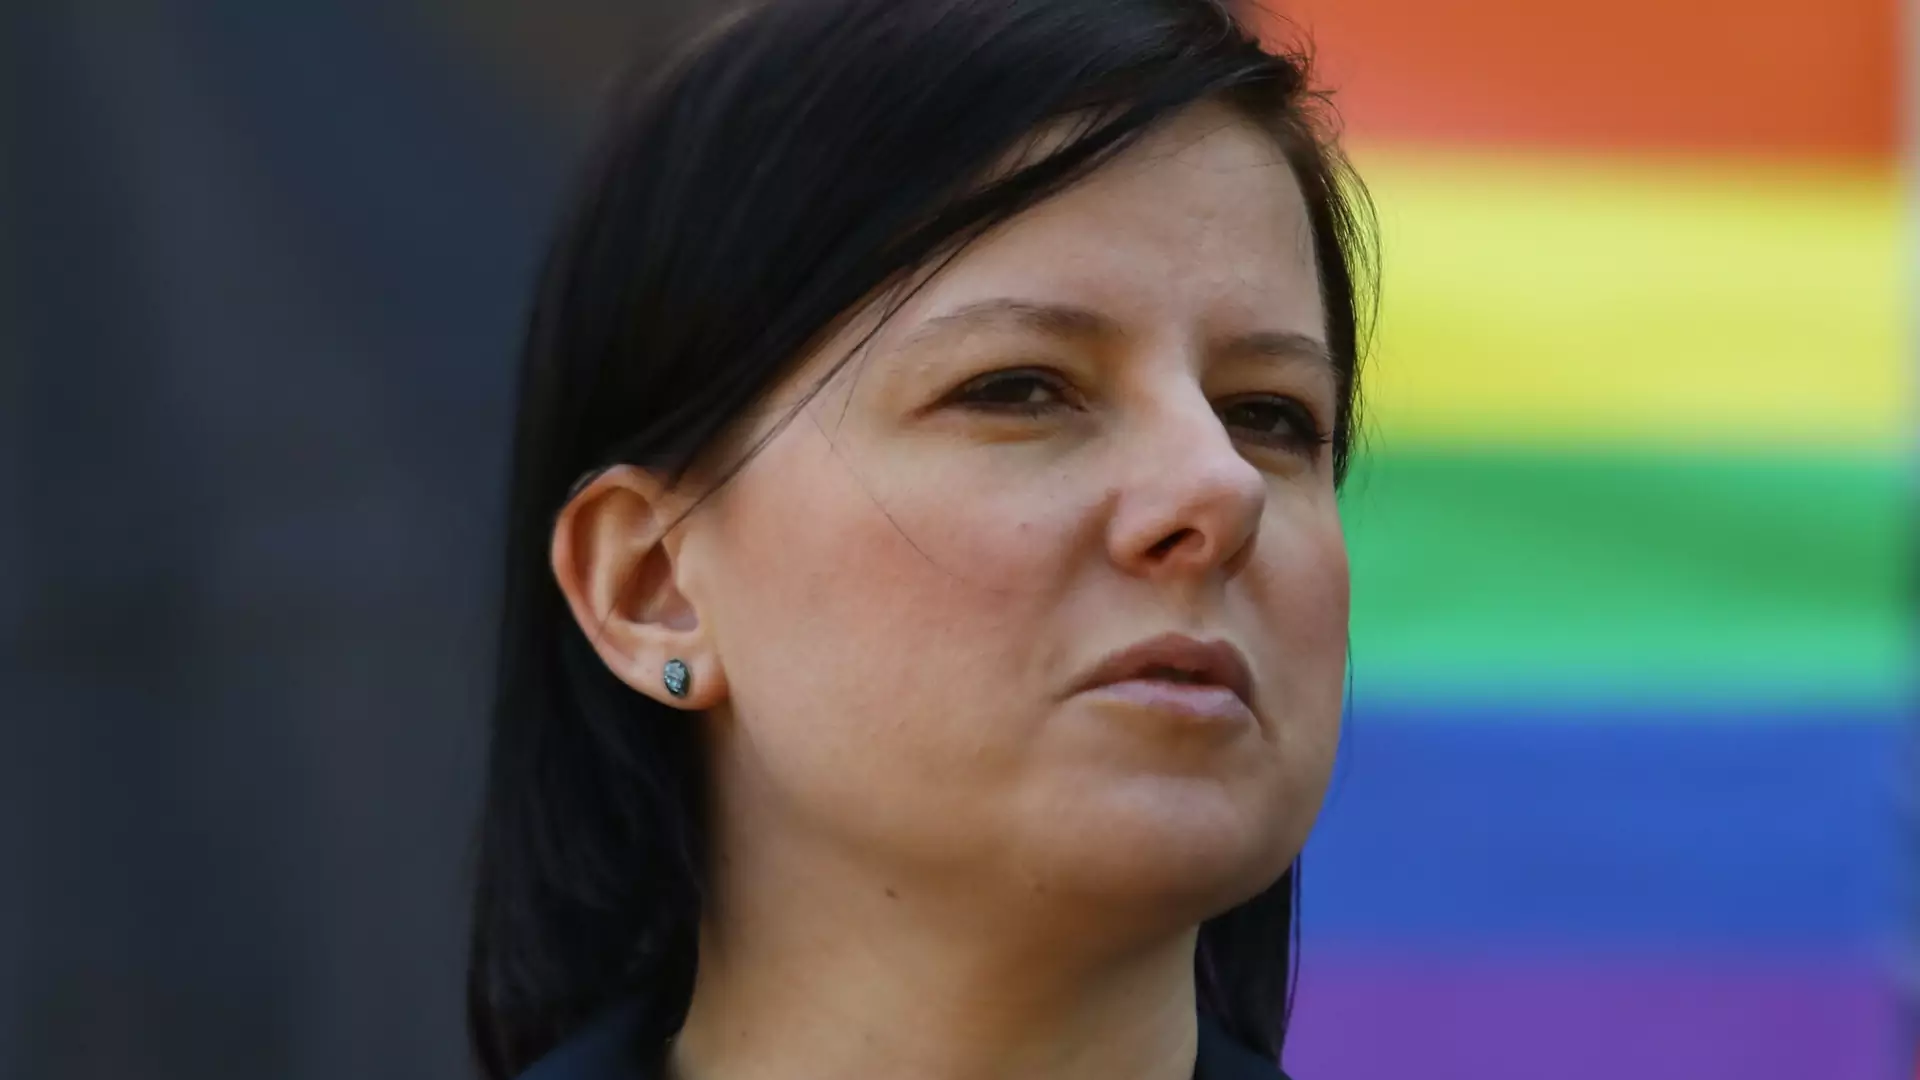 "Stop LGBT" znowu w Sejmie. Kaja Godek chce zakazać marszów równości